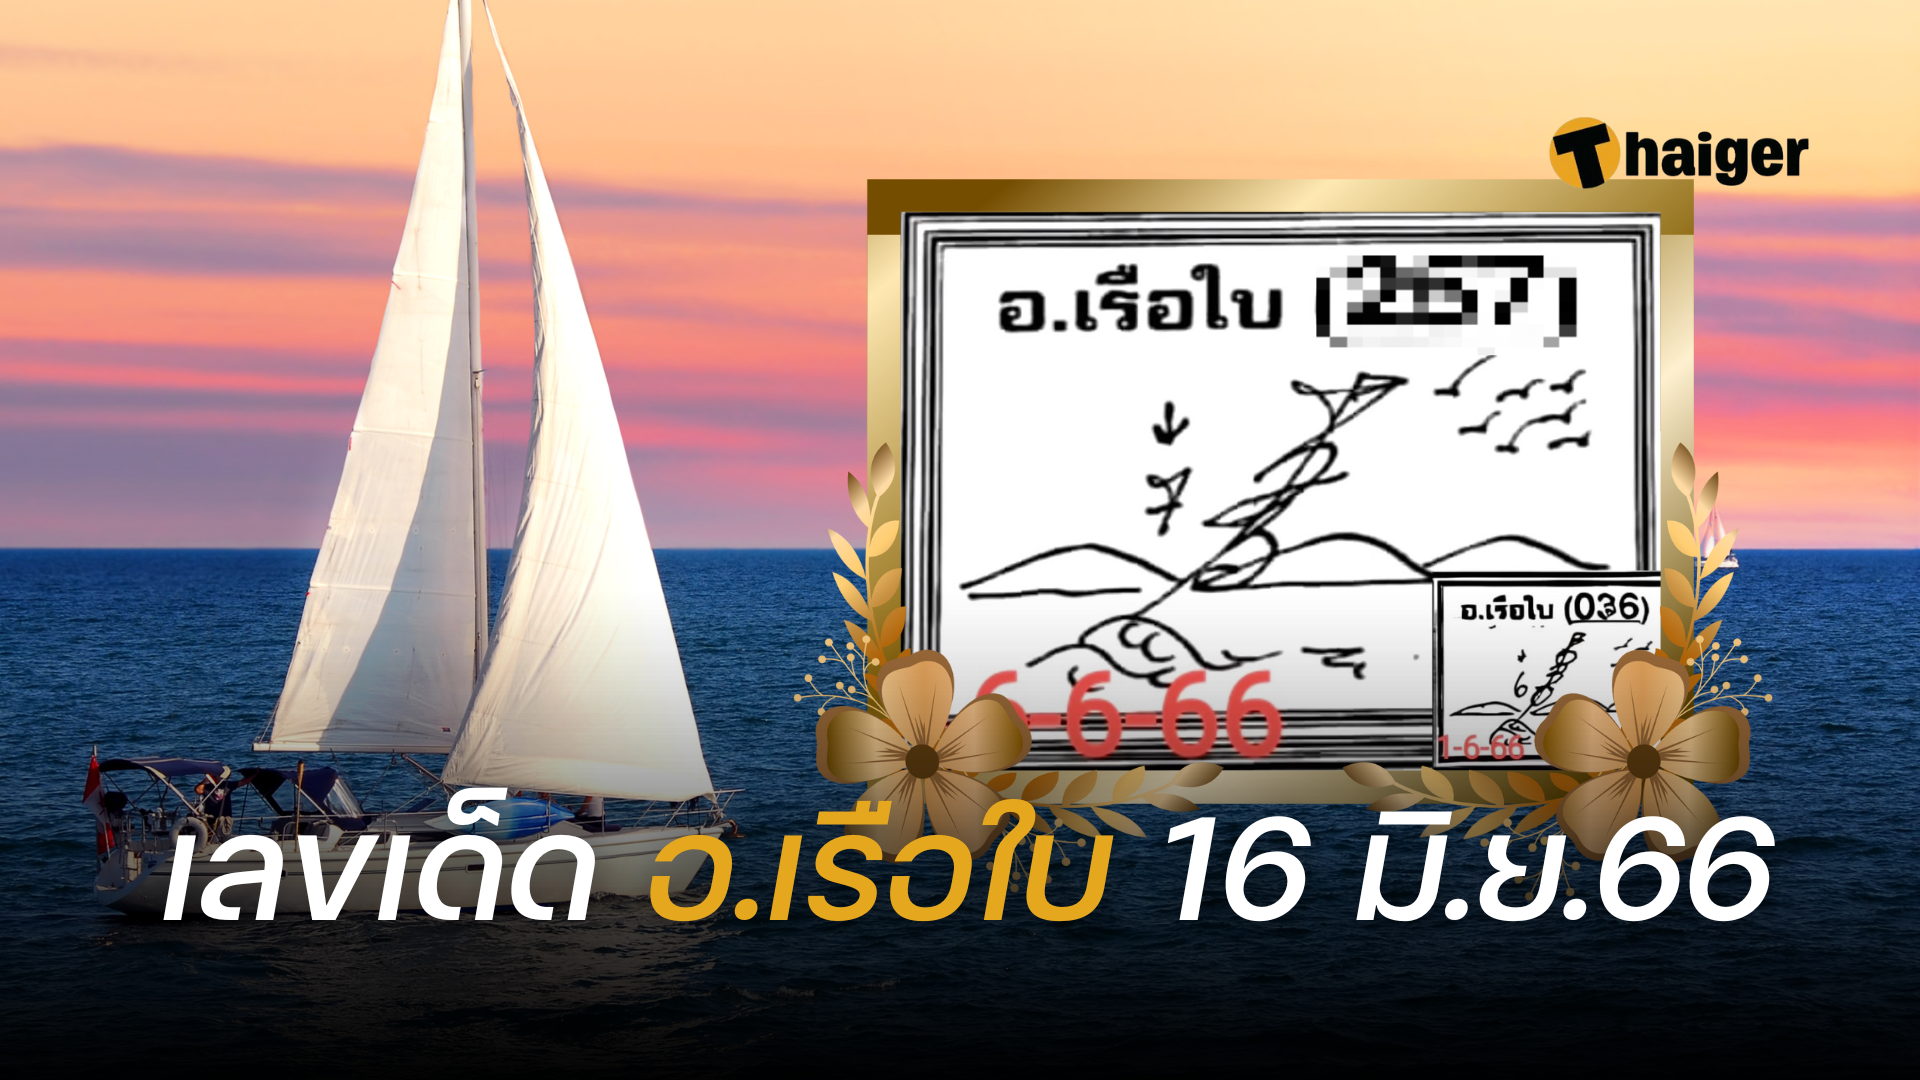 เลขเด็ด อ.เรือใบ งวดที่ 16 มิ.ย.66 สูตรคำนวนหวย เลขแม่นพารวย | Thaiger  ข่าวไทย